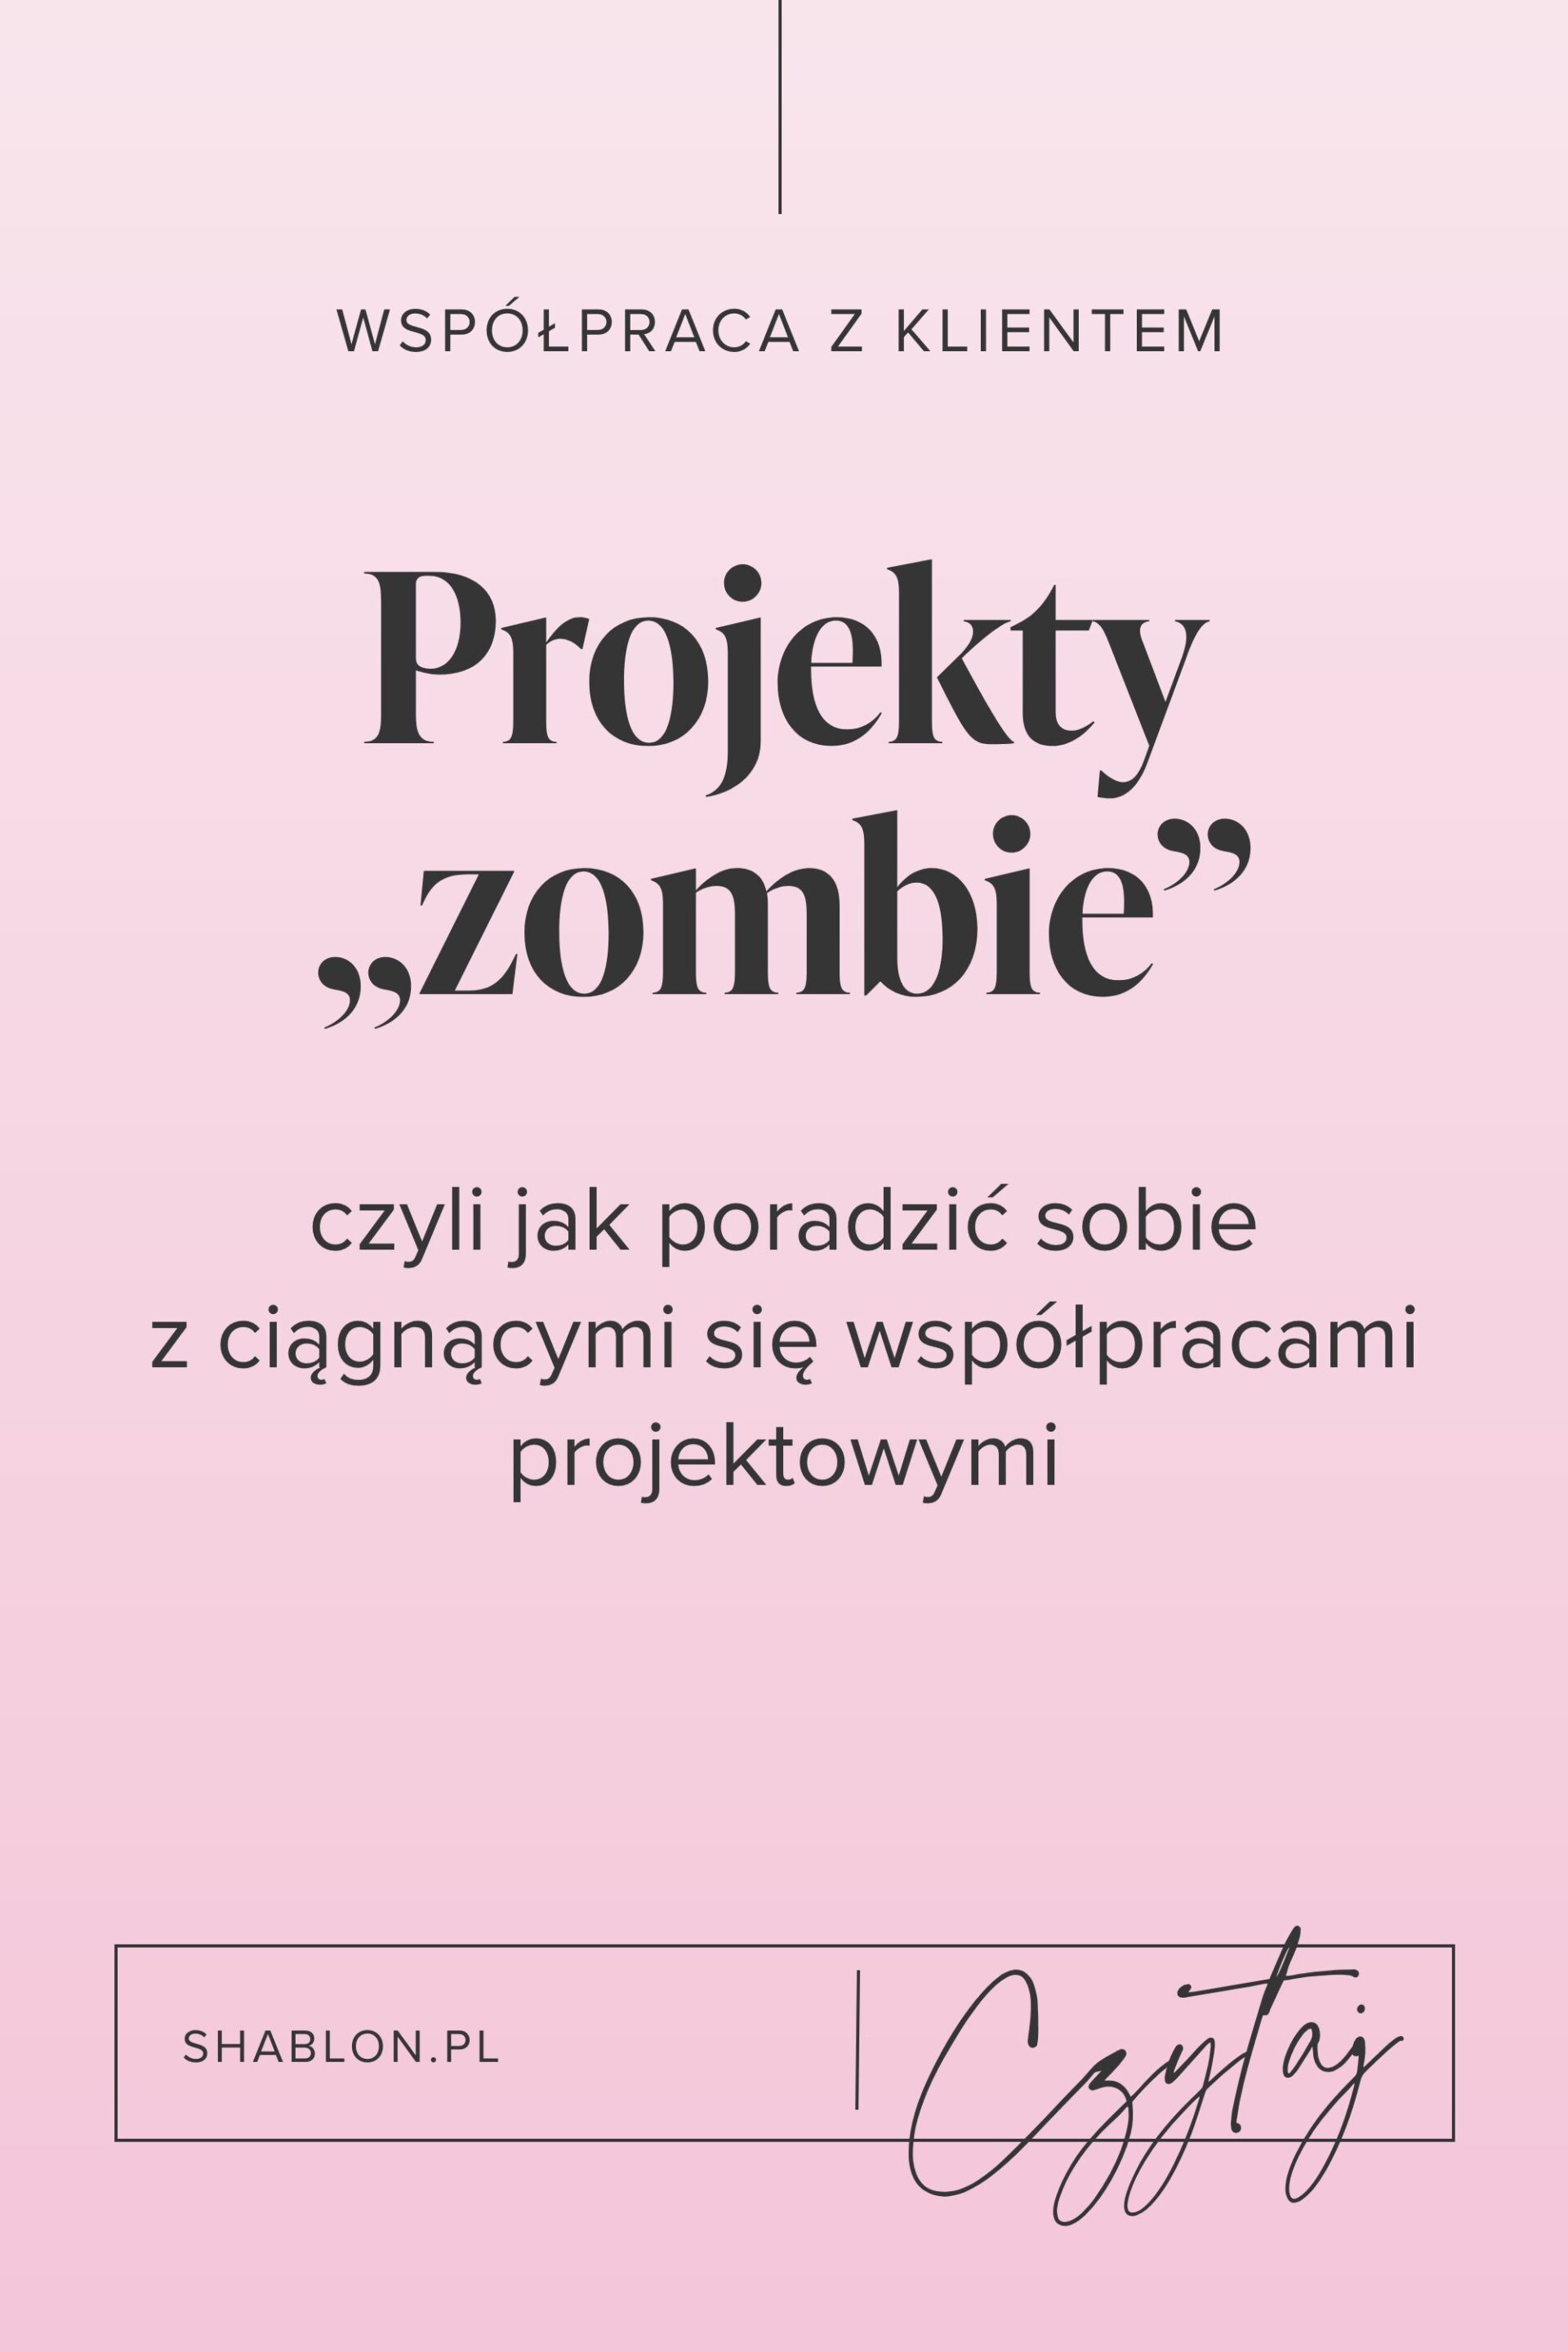 Wzory maili do projektów zombie